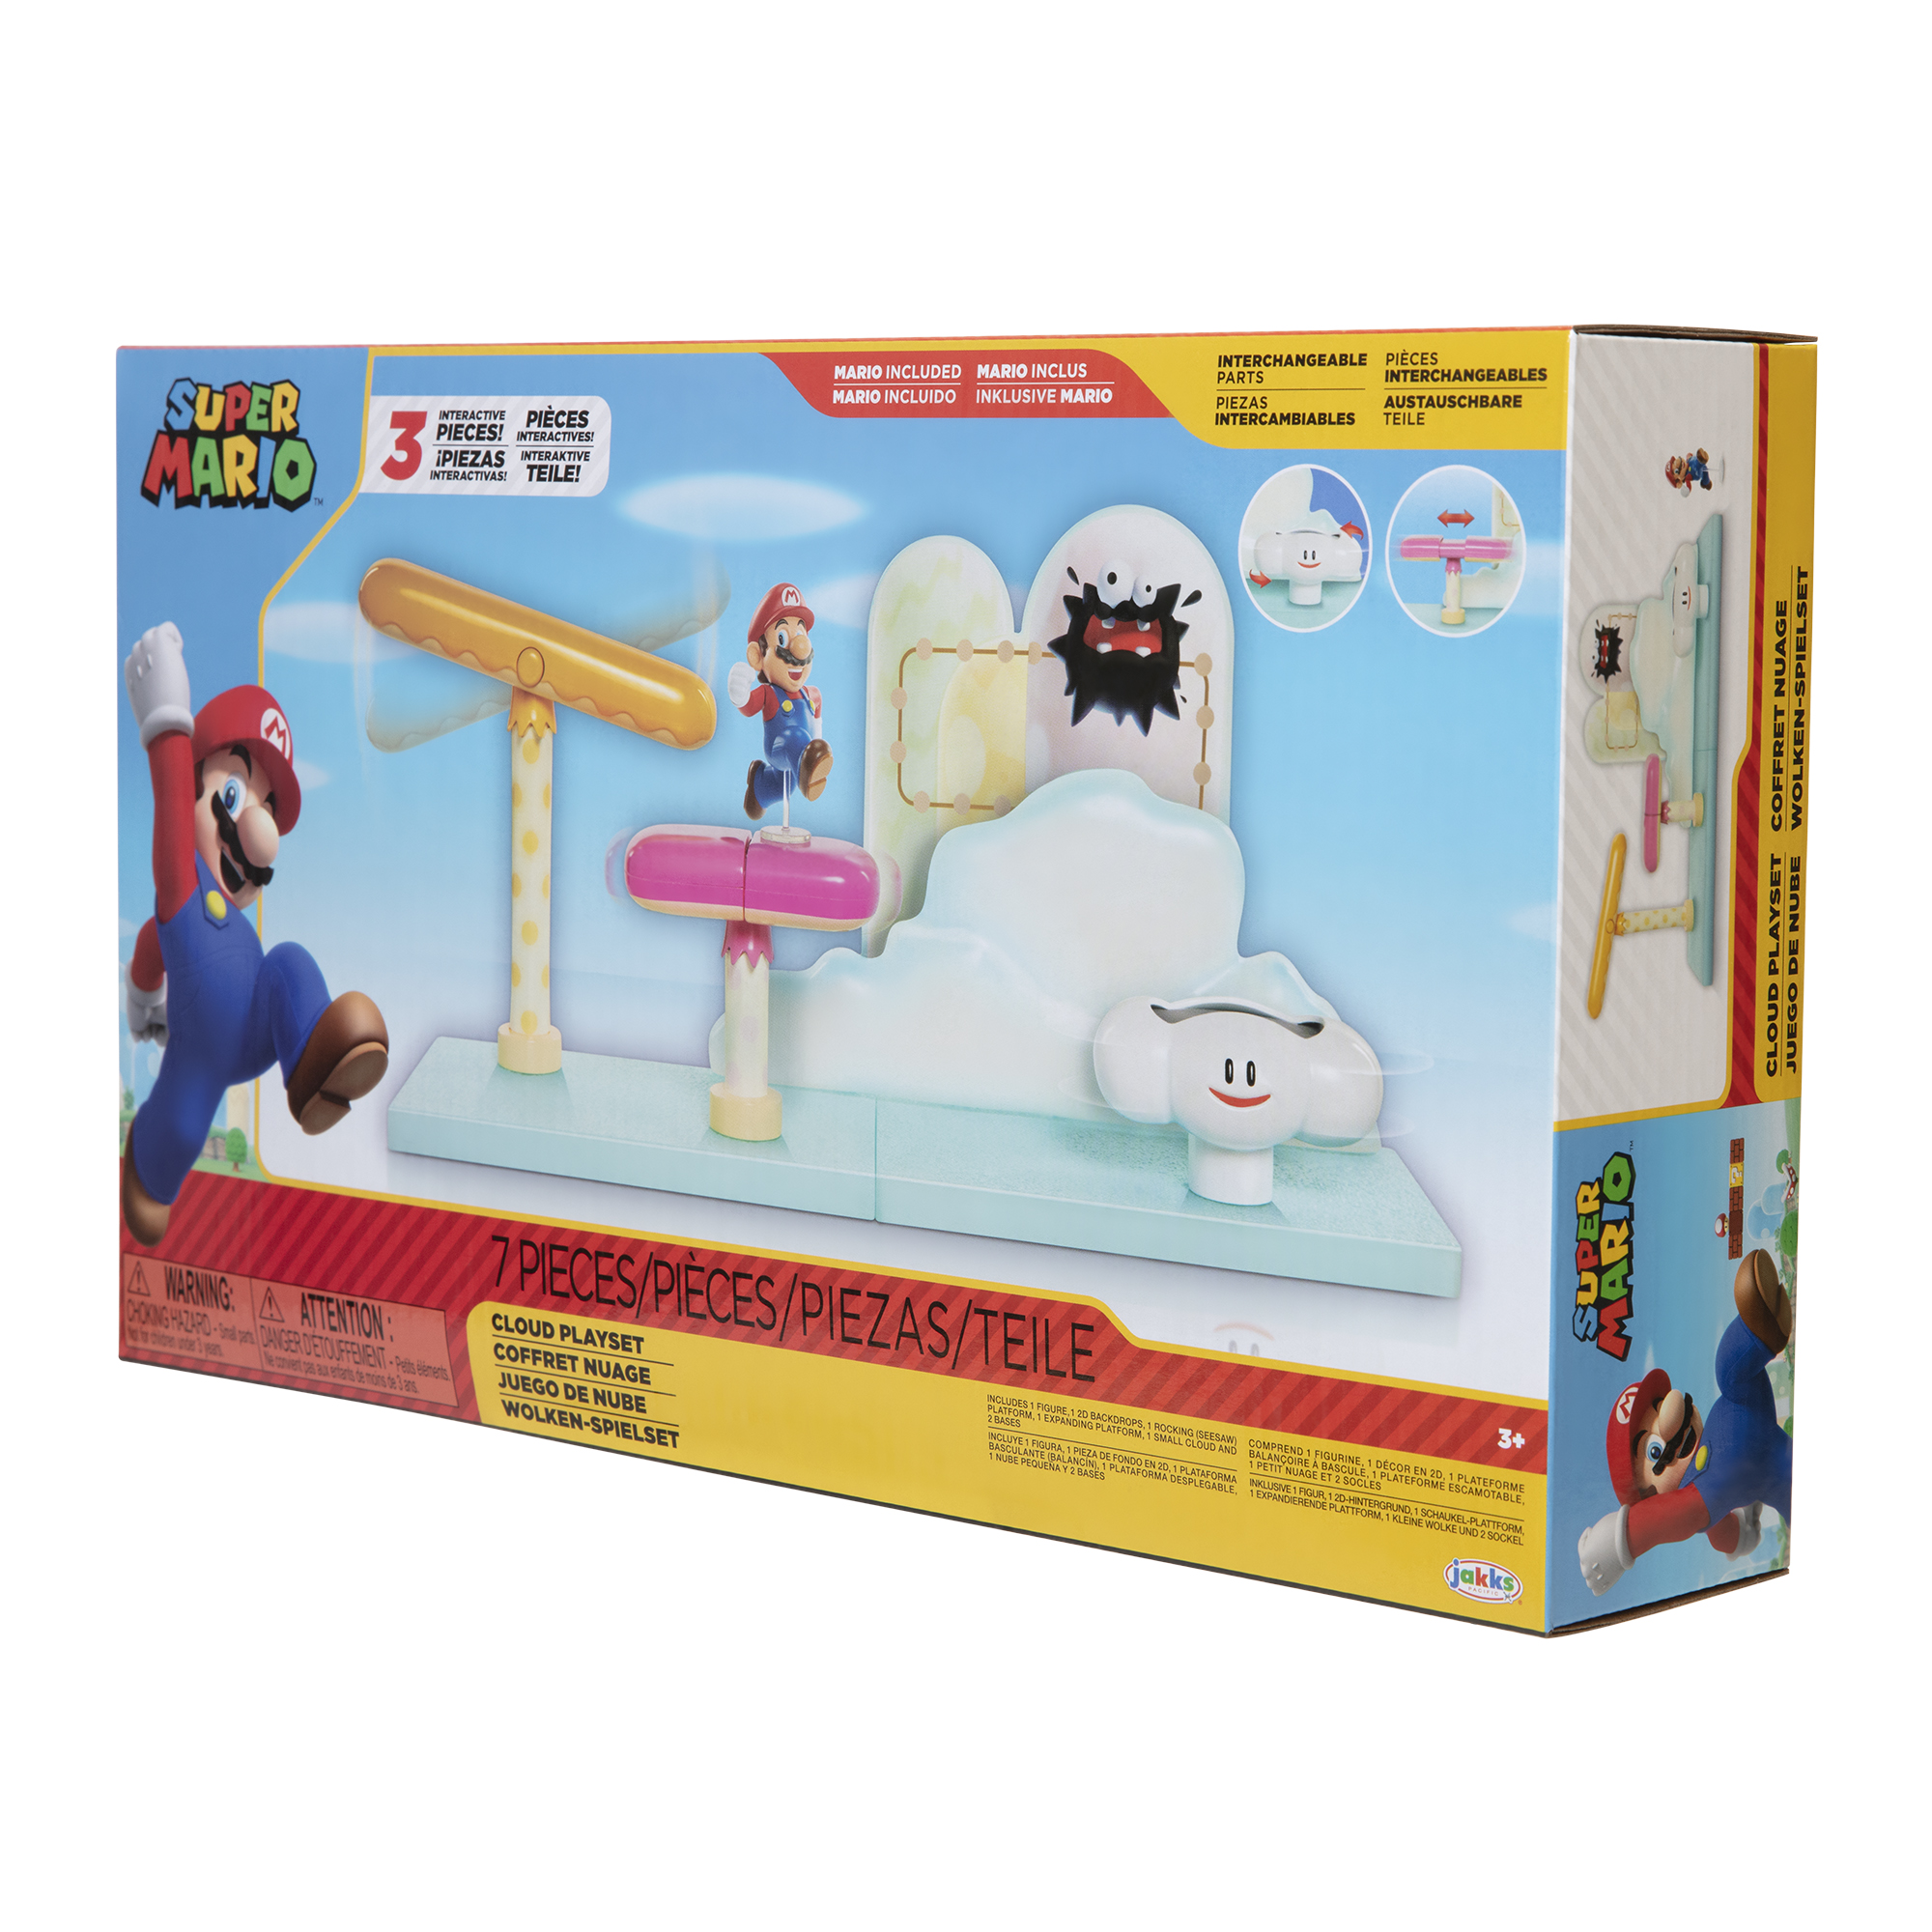 JAKKS PACIFIC Playset Nube Mario 7 Super piezas incluido & Mario Spielware